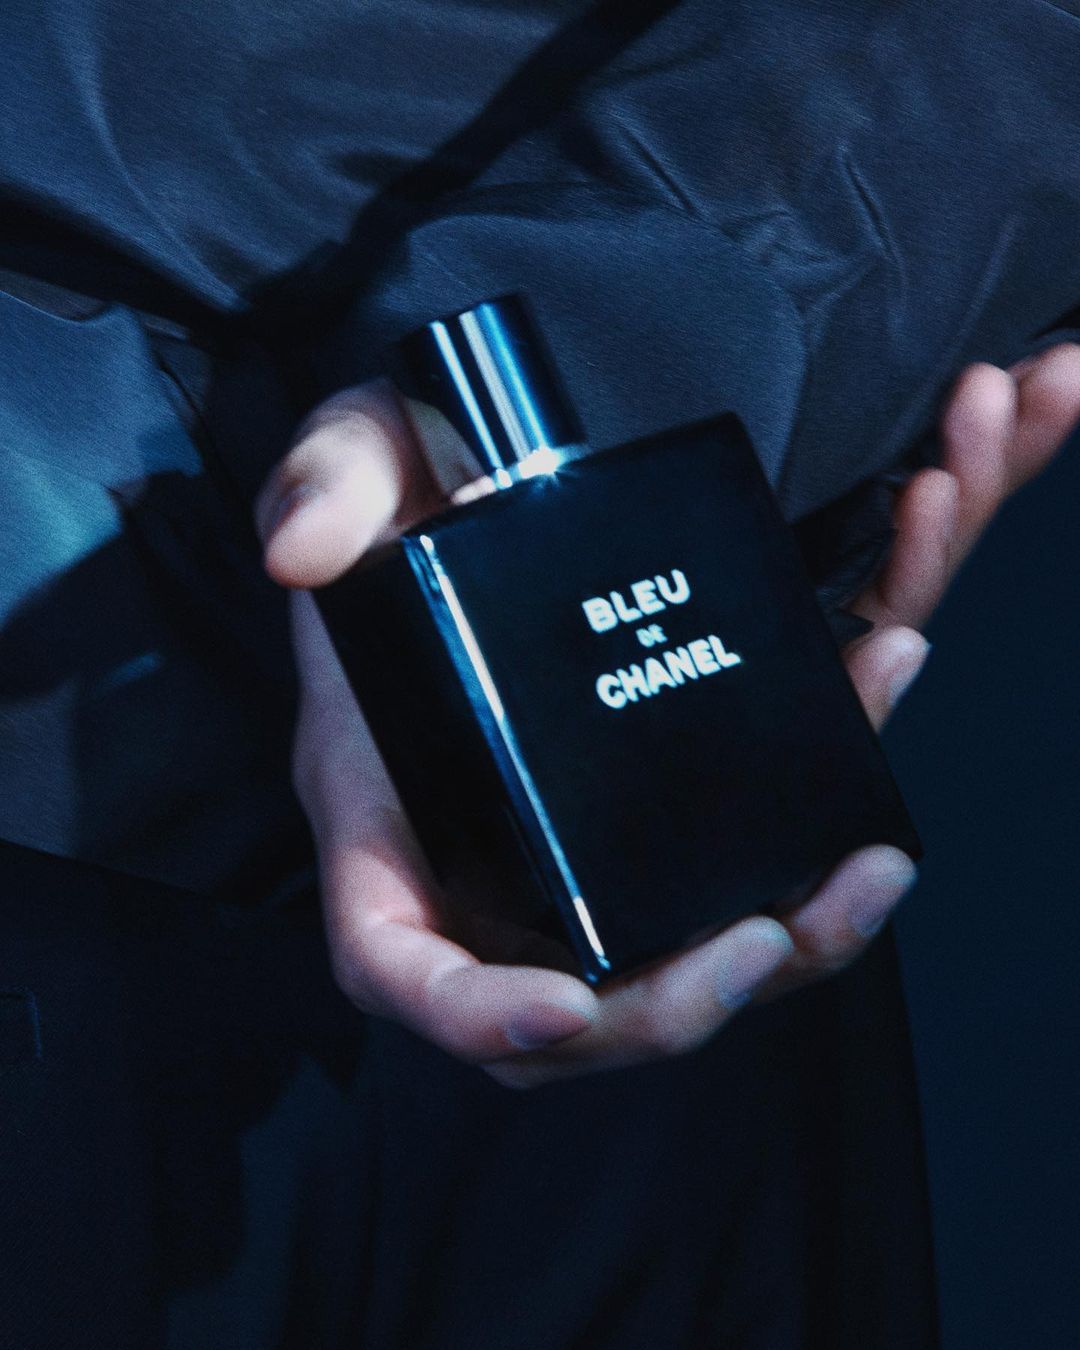 Park Seo Joon X Bleu de CHANEL ✨ Our Chanel man came for a